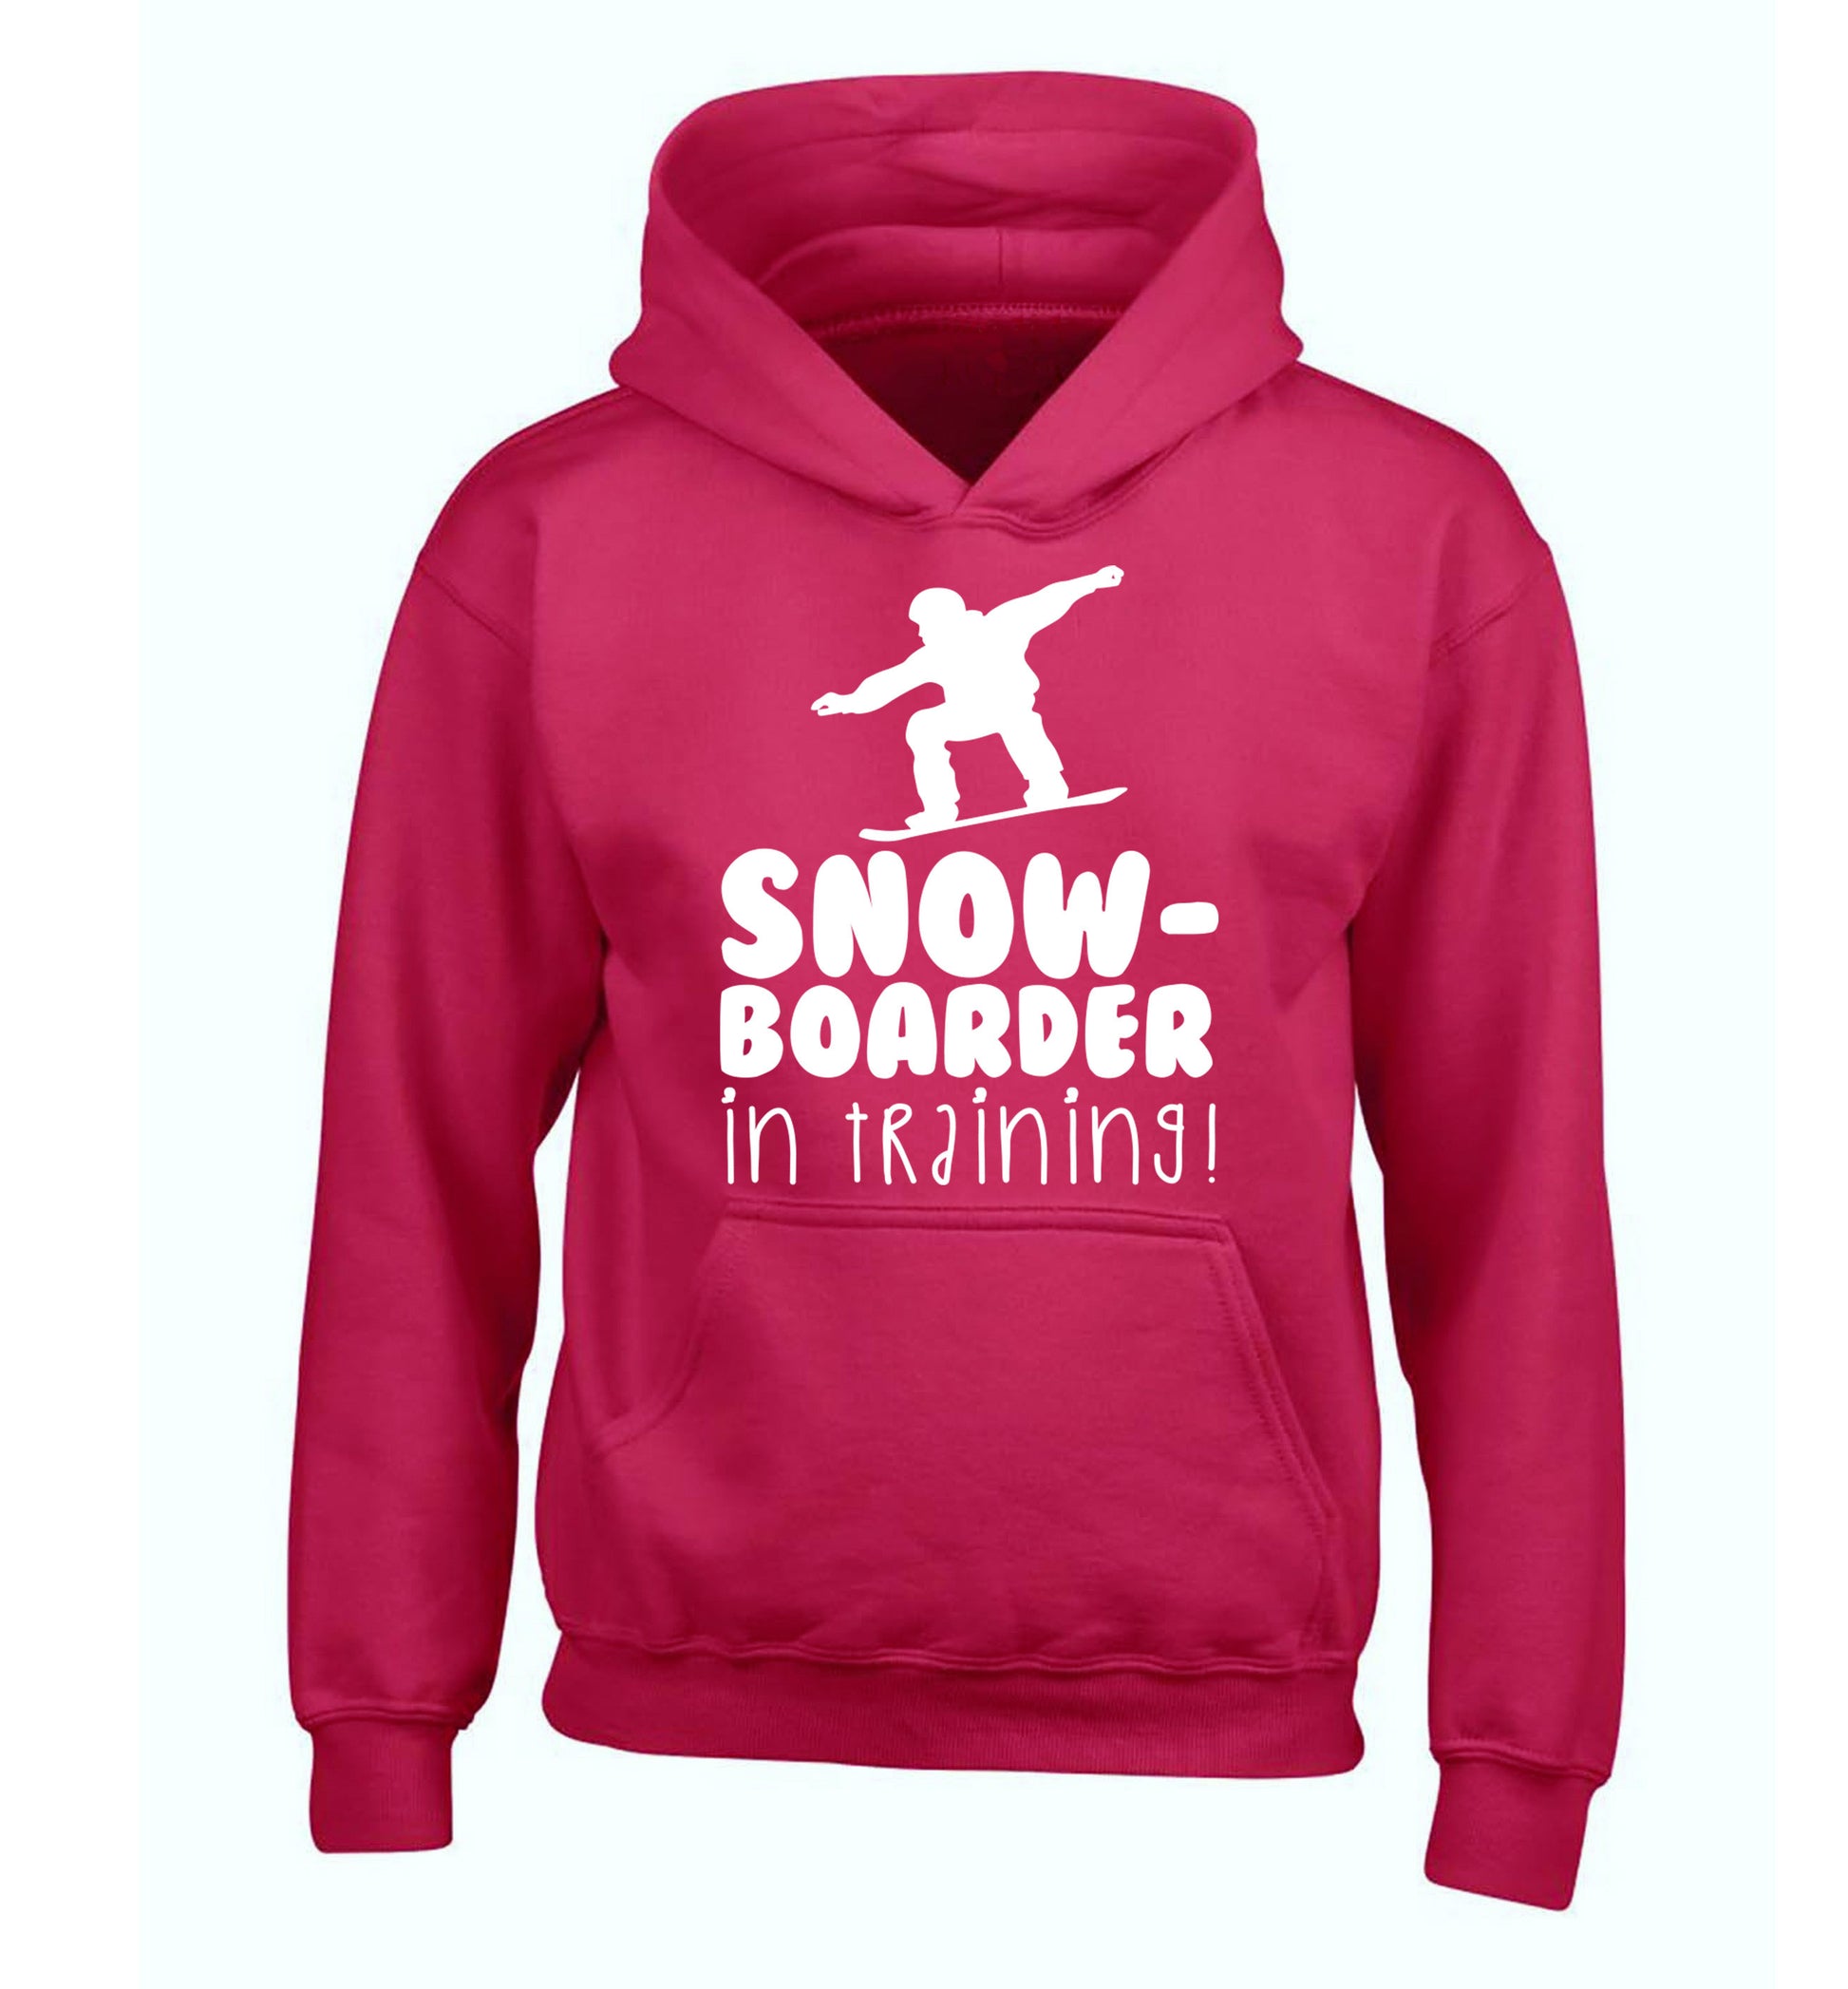 Snowboarder in training children's pink hoodie 12-14 Years